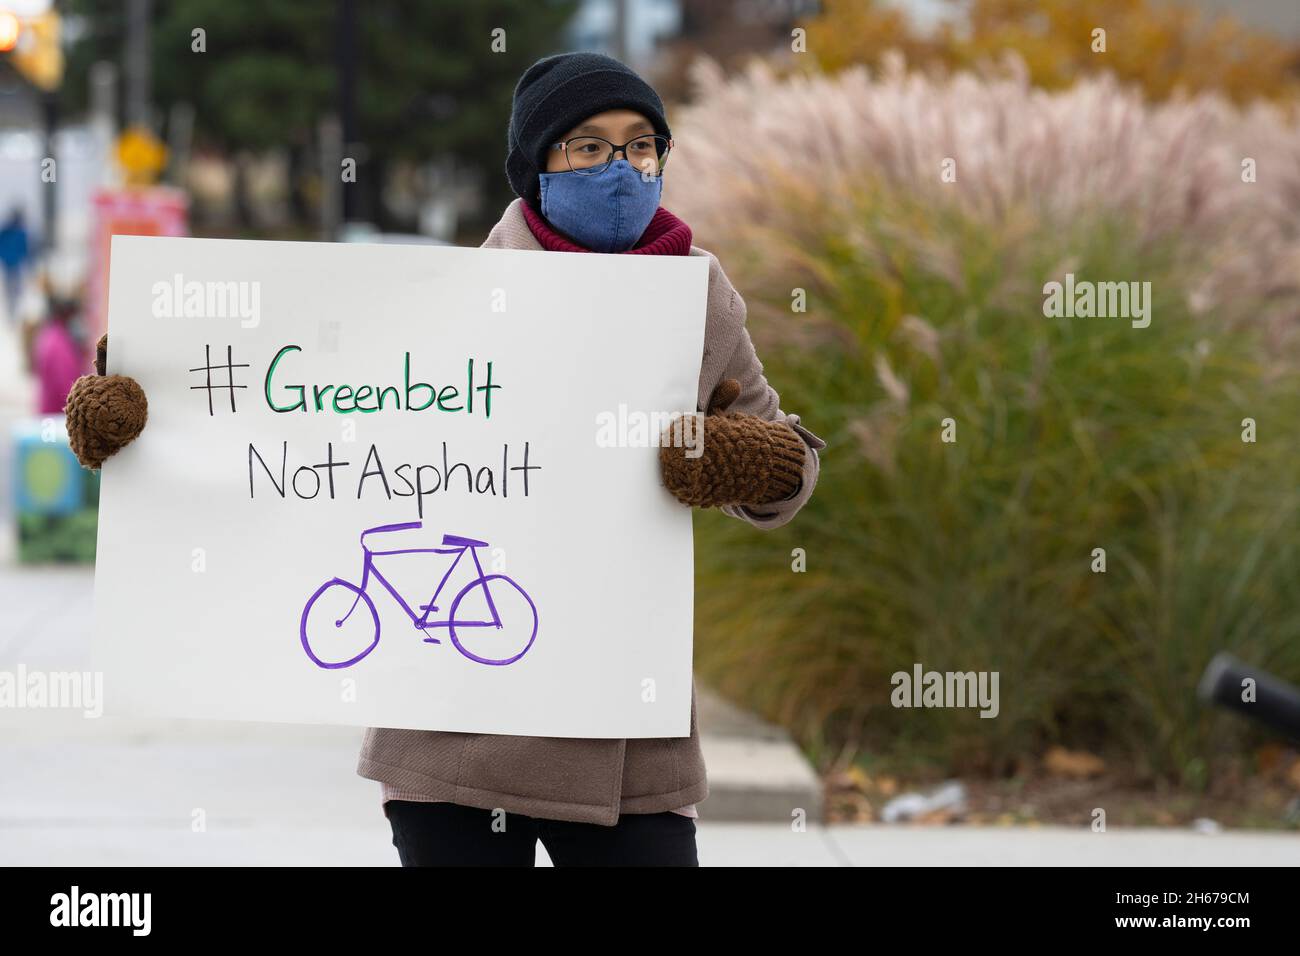 La giovane donna ha un segno per protestare contro la proposta di Ontario Highway 413, Day of Action Stop 413 e salvare la Greenbelt, novembre 13 2021 Foto Stock